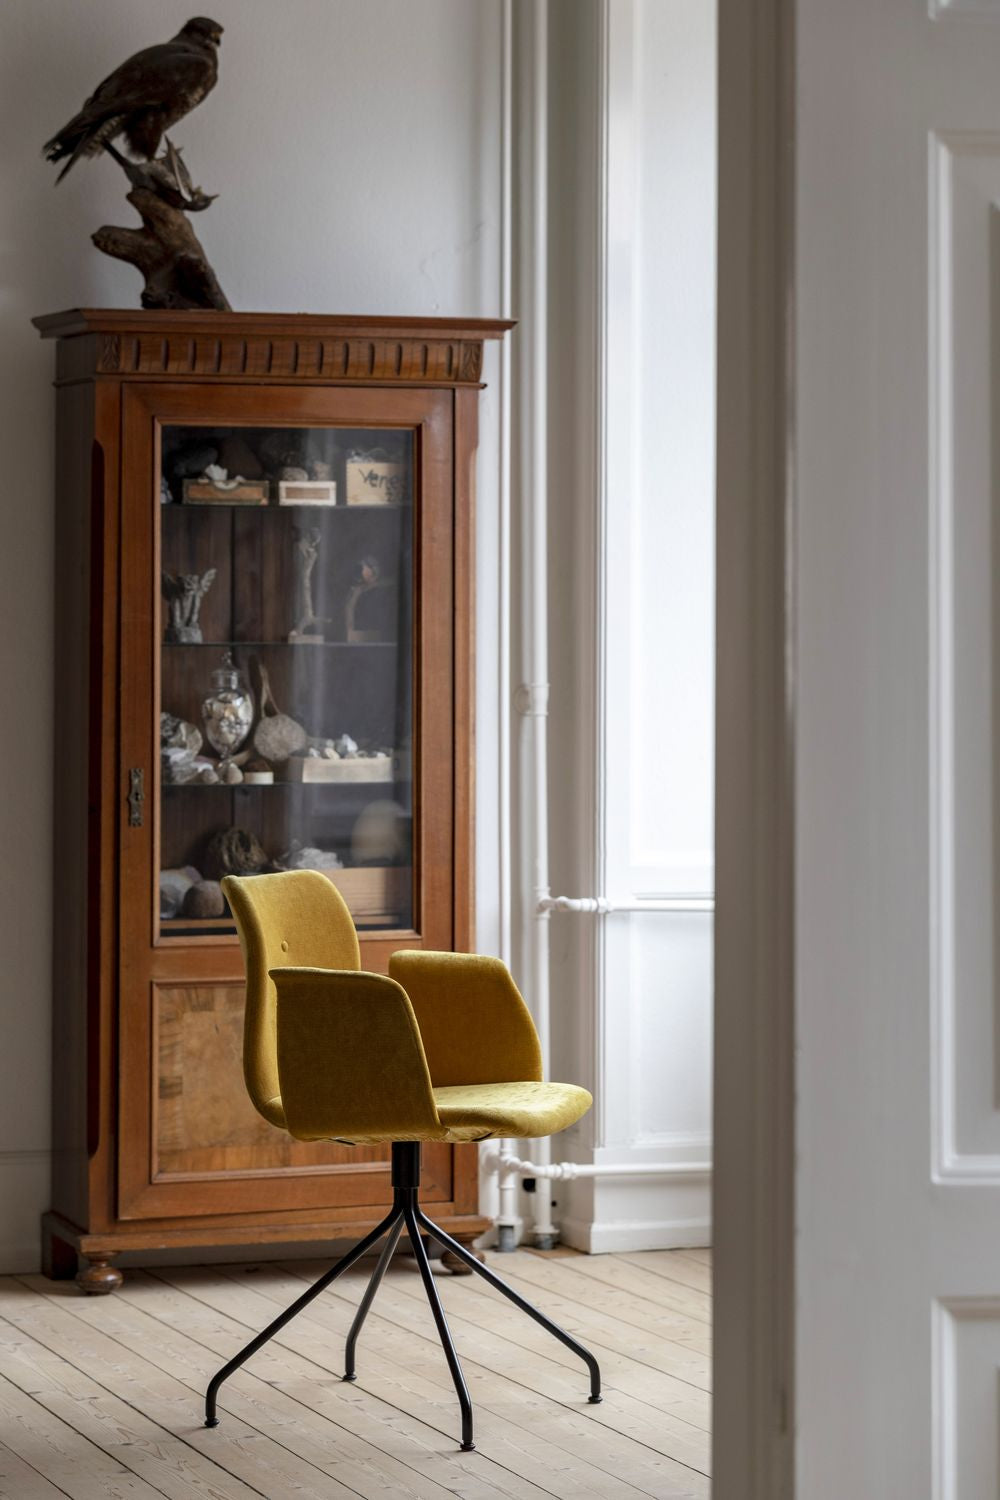 Bent Hansen Chaise primum avec accoudoirs pivotants en acier inoxydable, cuir davo marron